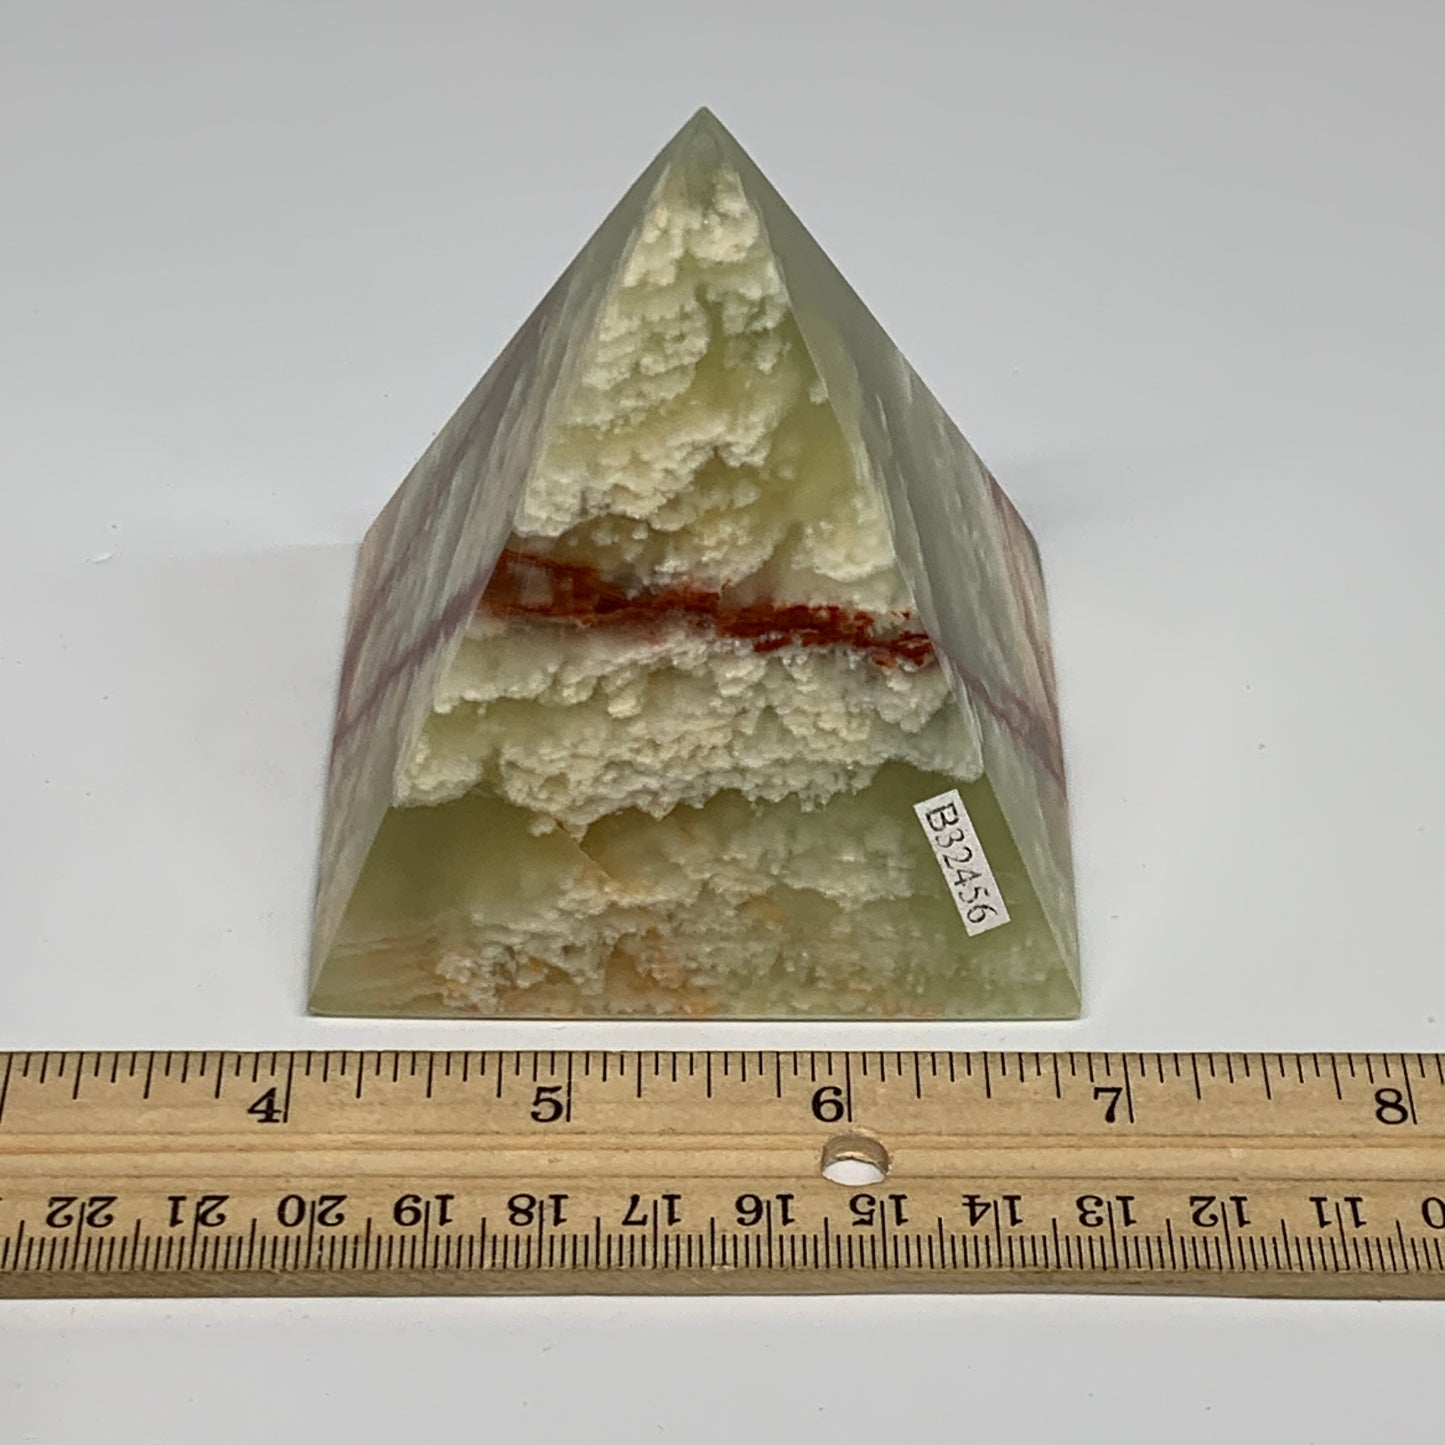 0.9 lbs, 3"x2.9"x2.9", Green Onyx Pyramid Gemstone Crystal, B32456